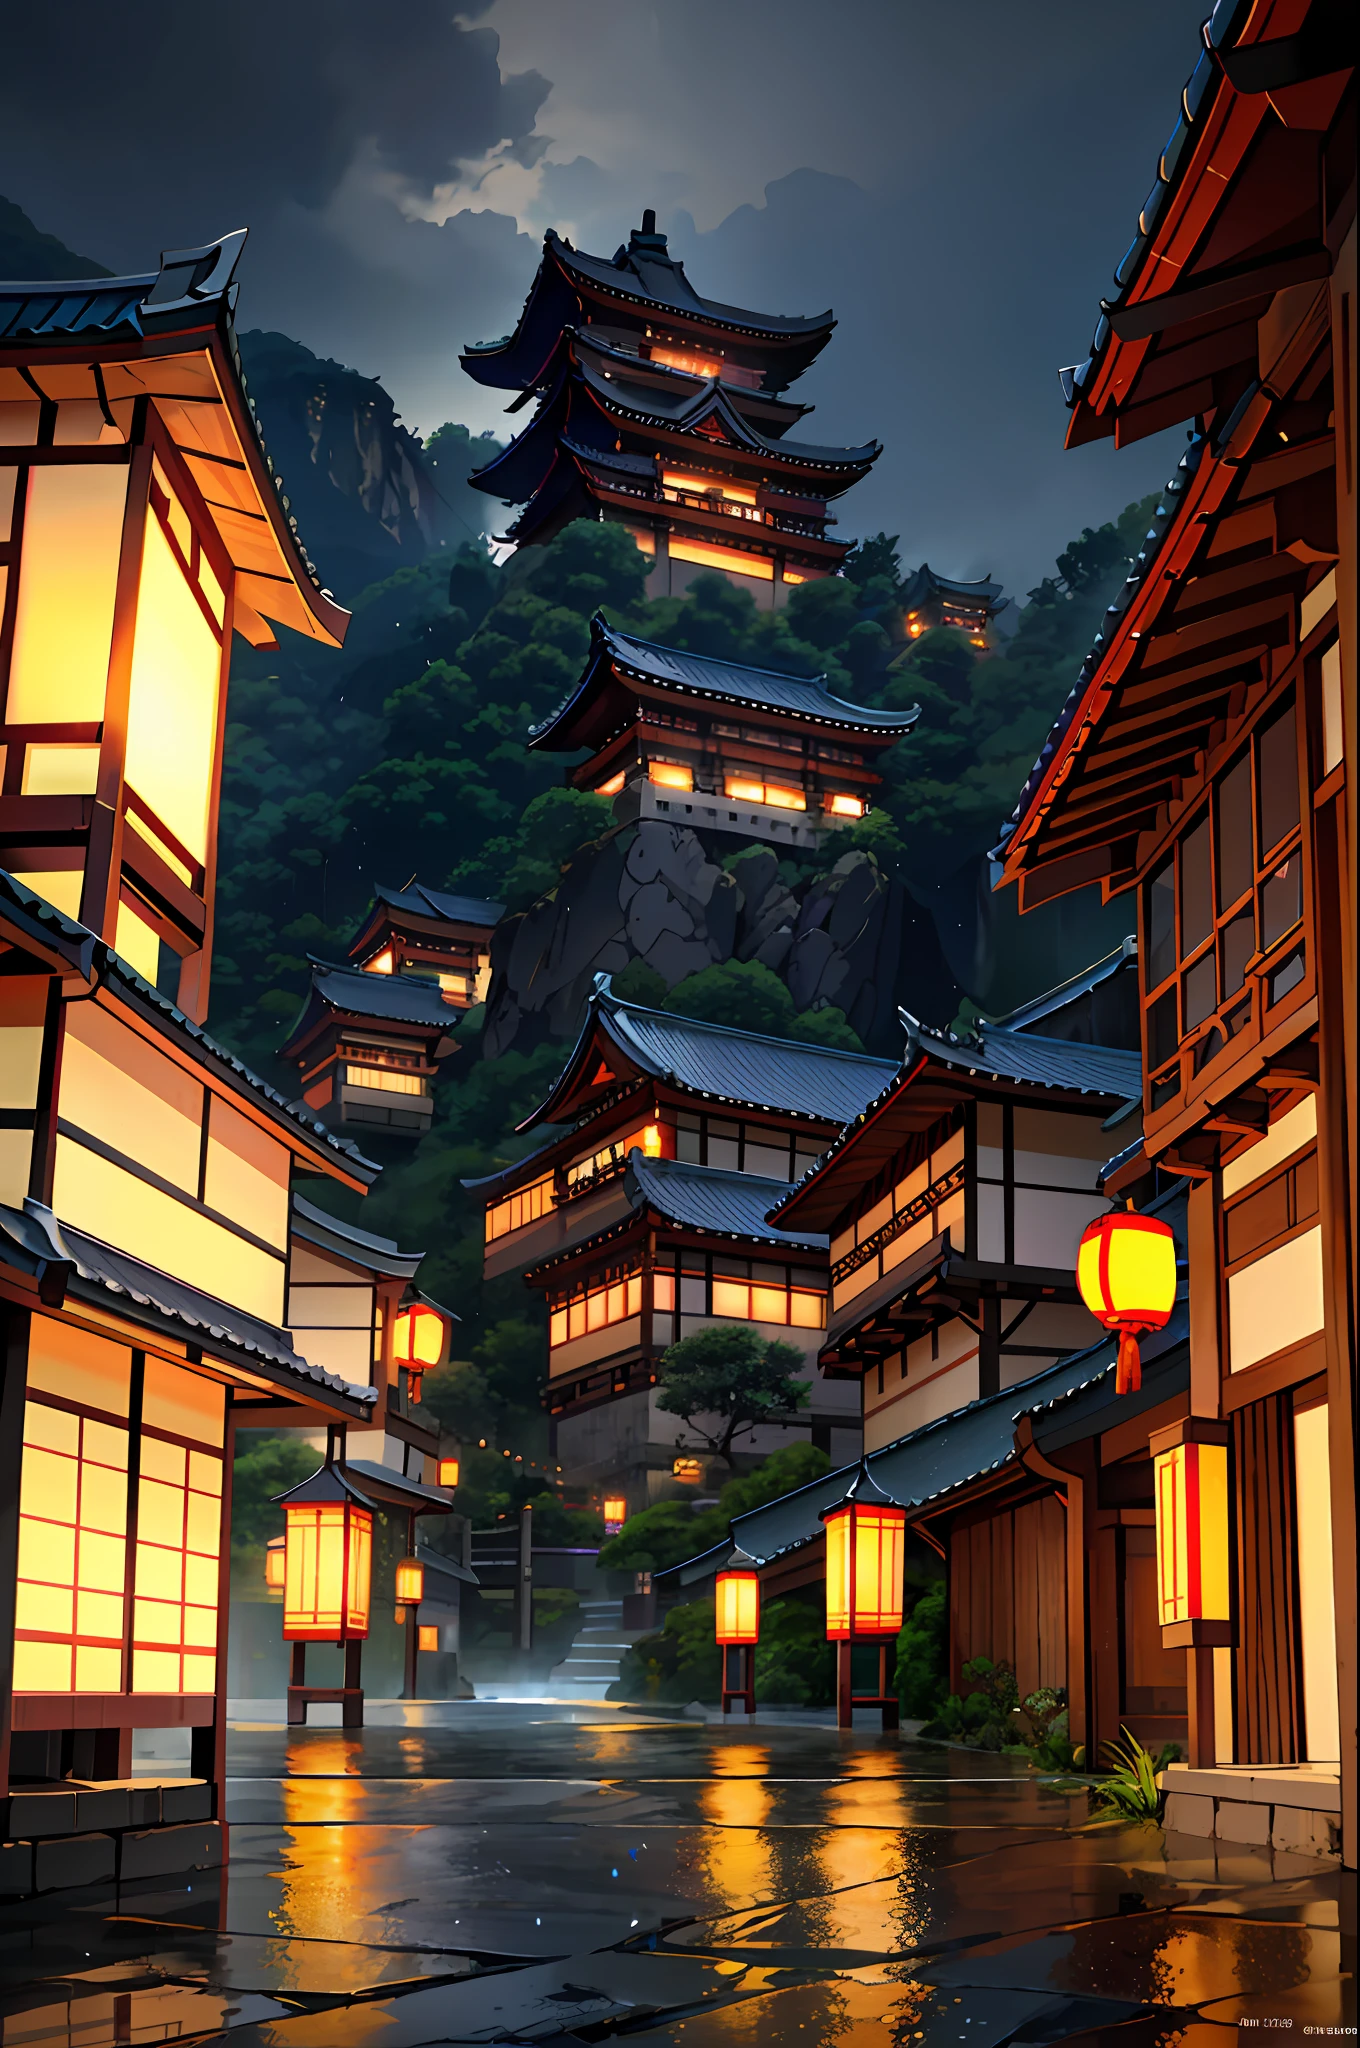 มองเห็นหมู่บ้านที่มีแสงไฟส่องจากอาคารมากมาย, เมืองจีนในฝัน, หมู่บ้านจีน, วอลล์เปเปอร์ที่น่าทึ่ง, เมืองญี่ปุ่น, หมู่บ้านญี่ปุ่น, ภาพถ่ายเมืองที่สมจริงมาก, หมู่บ้านเอเชียเก่า, เมืองญี่ปุ่น, โดย เรย์มอนด์ ฮัน, ตอนเย็นฝนตก, ปราสาทโบราณของจีนไซเบอร์พังค์, อาคารที่มีแสงสว่างสวยงาม, ในตอนเย็นระหว่างฝนตก, สวยงามและสวยงาม, การถ่ายภาพ, โรงภาพยนตร์, 8k, รายละเอียดสูง ((ฝนตกหนัก)))